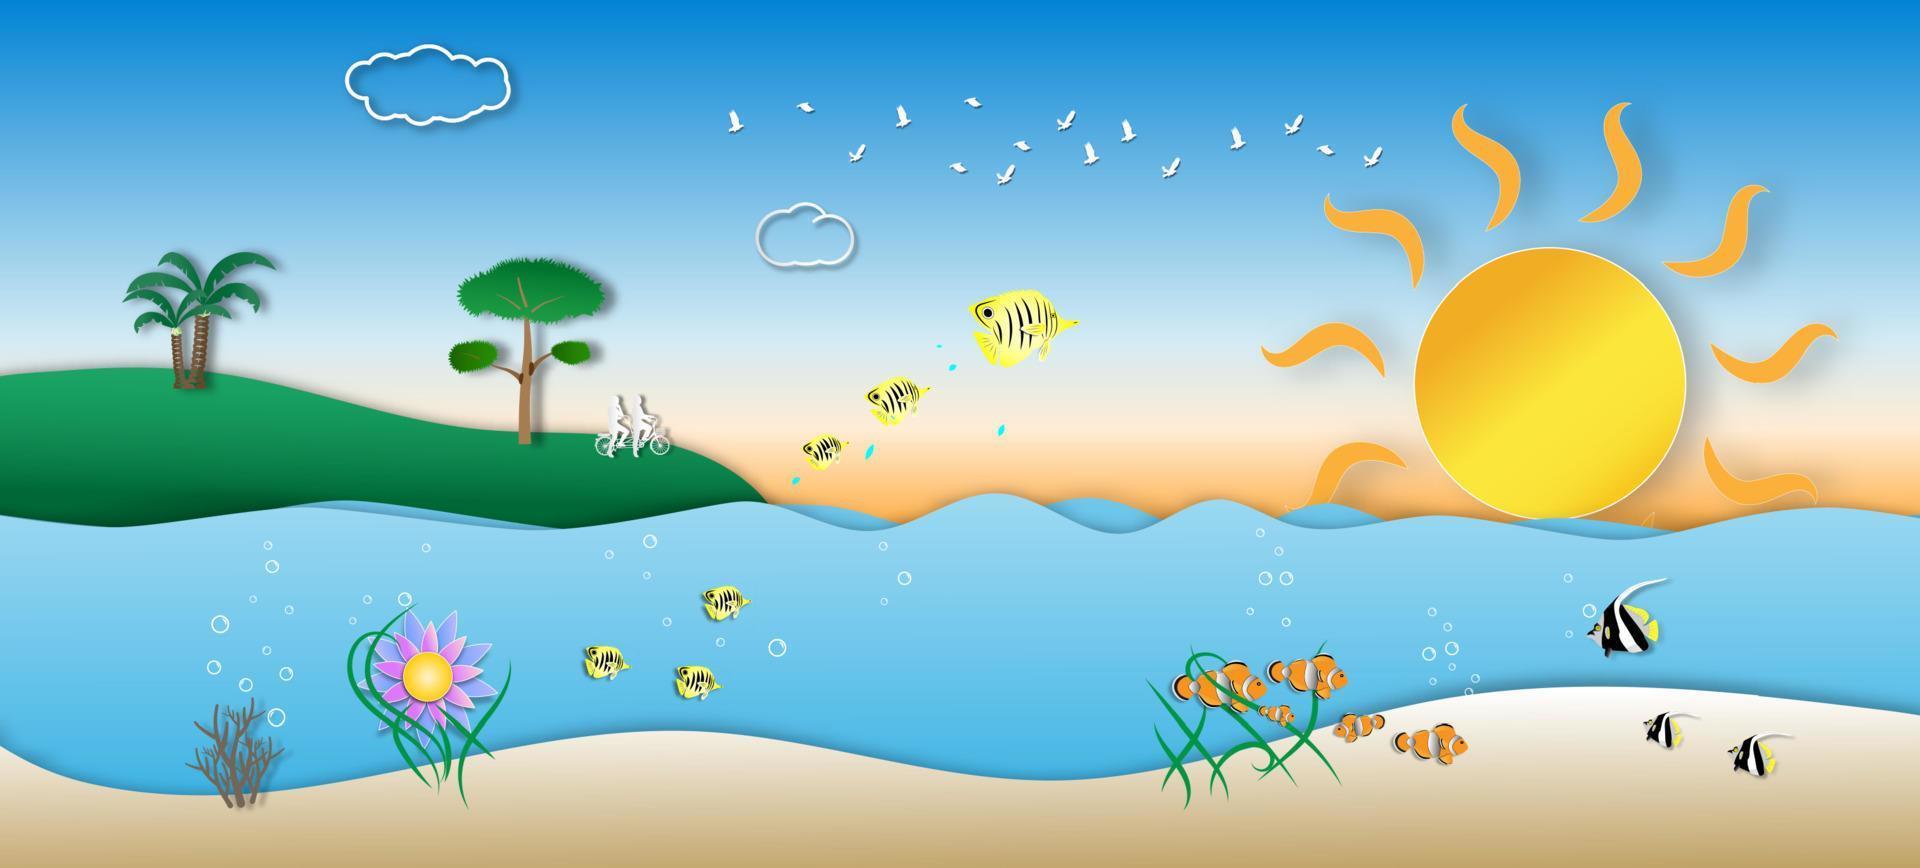 día mundial de los océanos con hermosos peces marinos de estilo de arte de papel, vector o ilustración con océanos y proteger el concepto de conservación